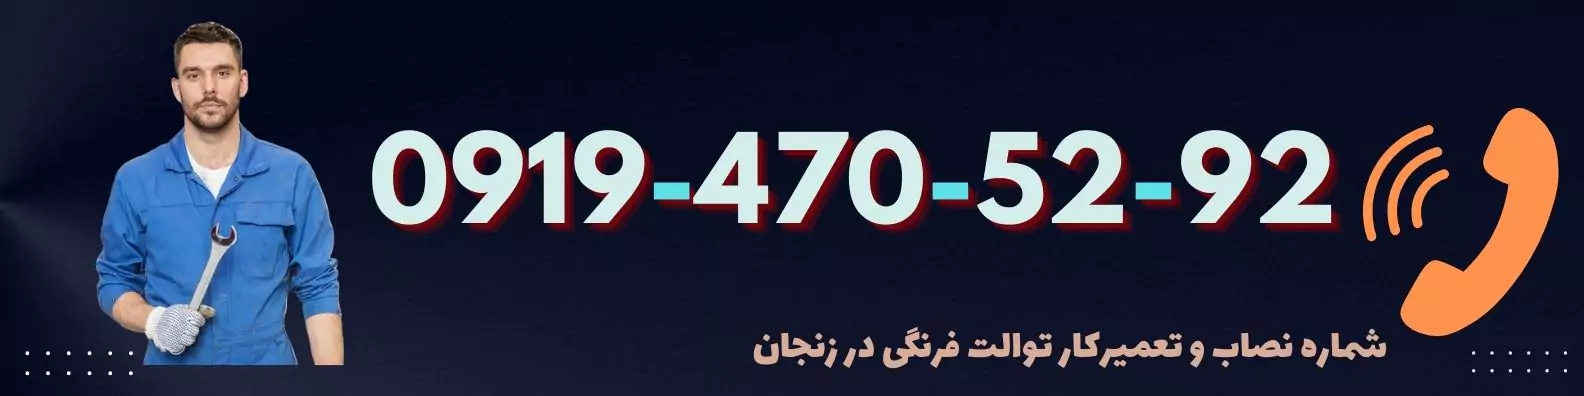 شماره تعمیرکار توالت فرنگی در زنجان